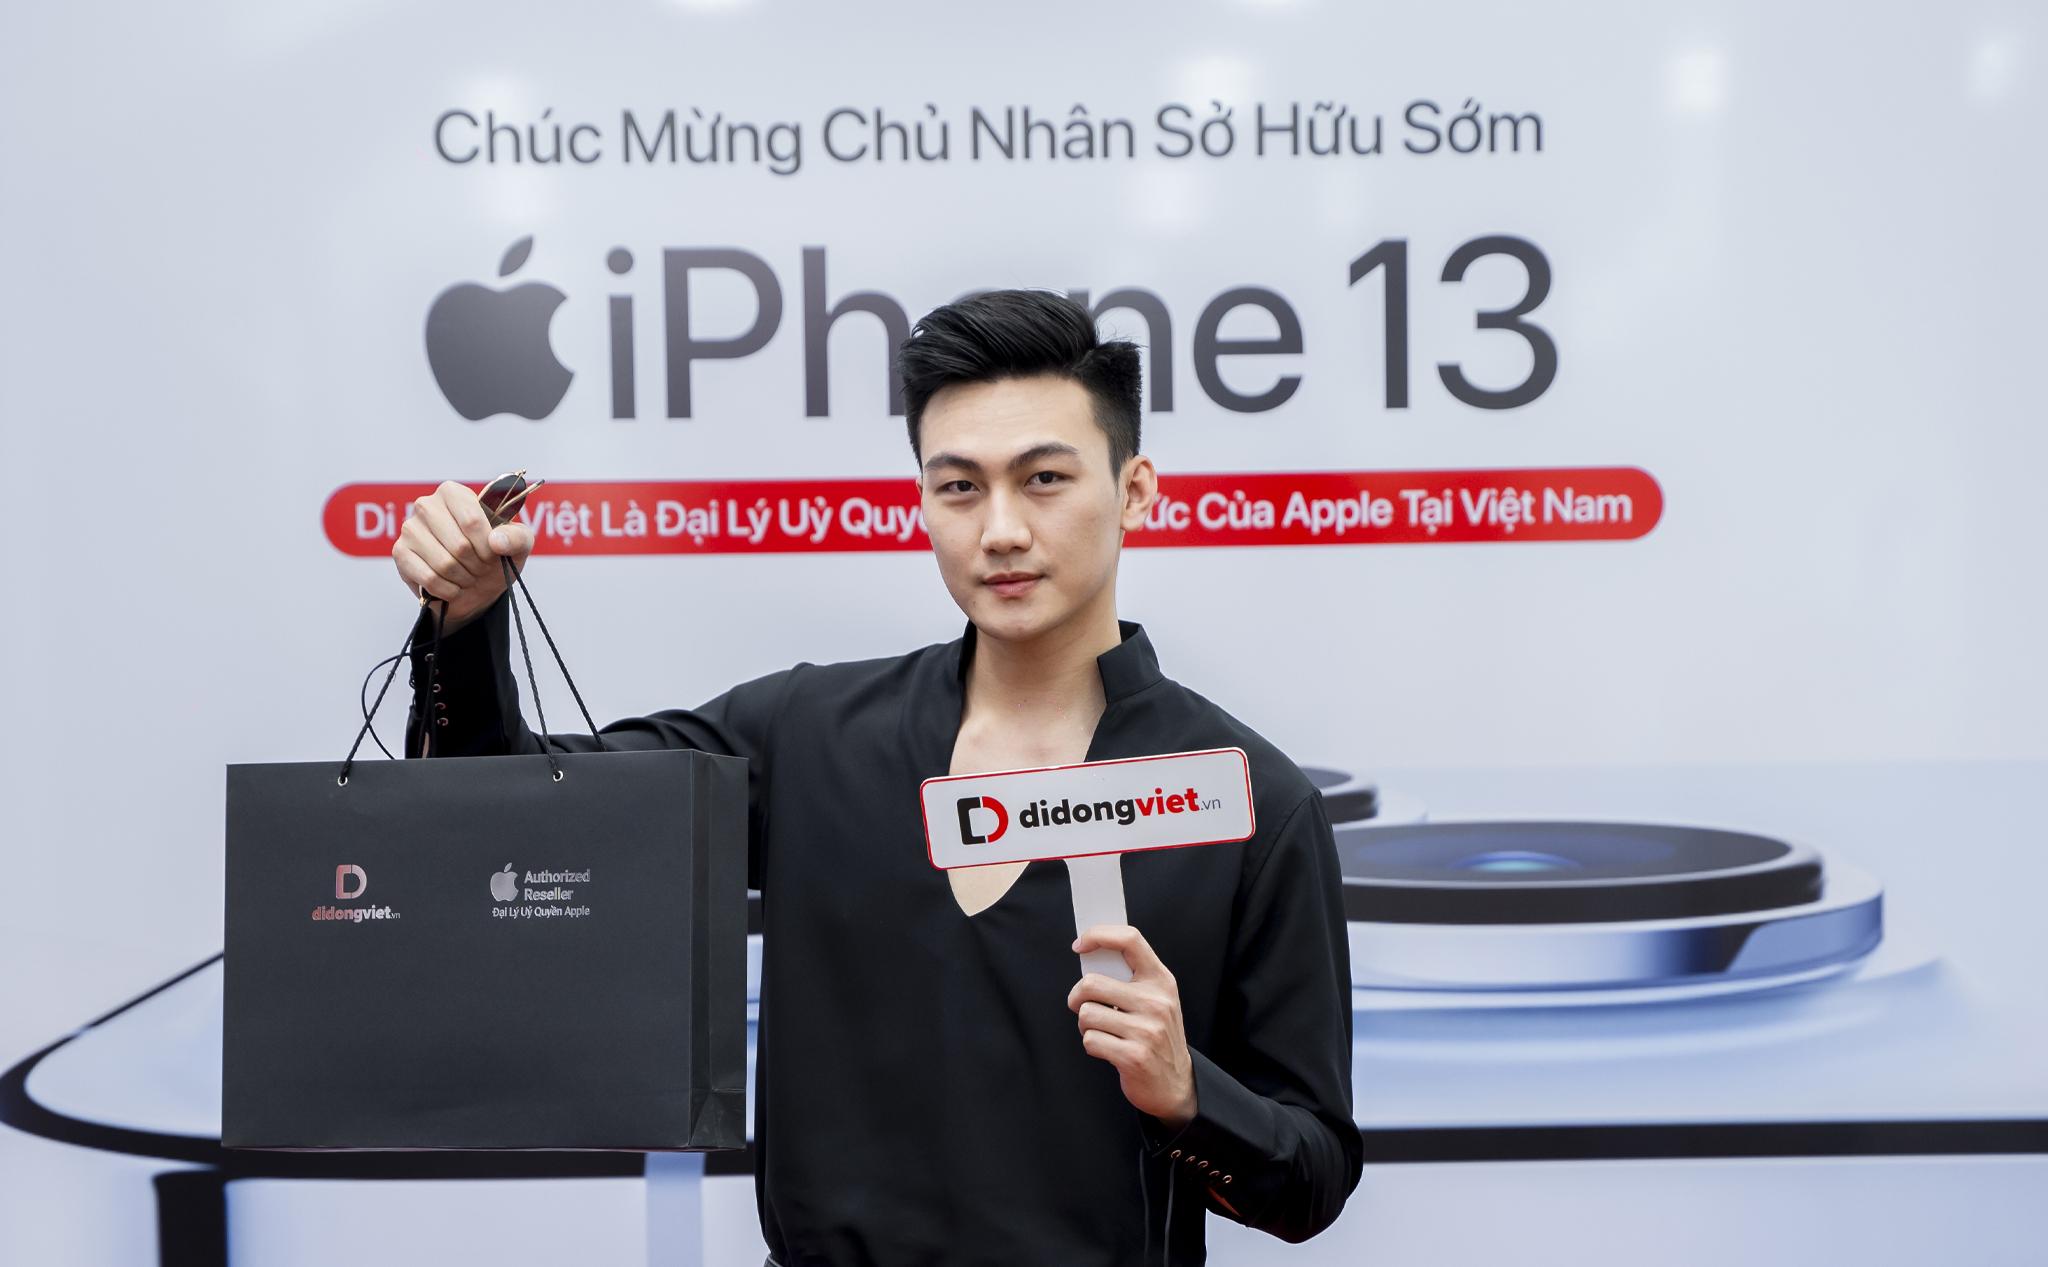 Điểm danh những sao Việt đầu tiên sở hữu iPhone 12 chỉ sau ít ngày ra mắt